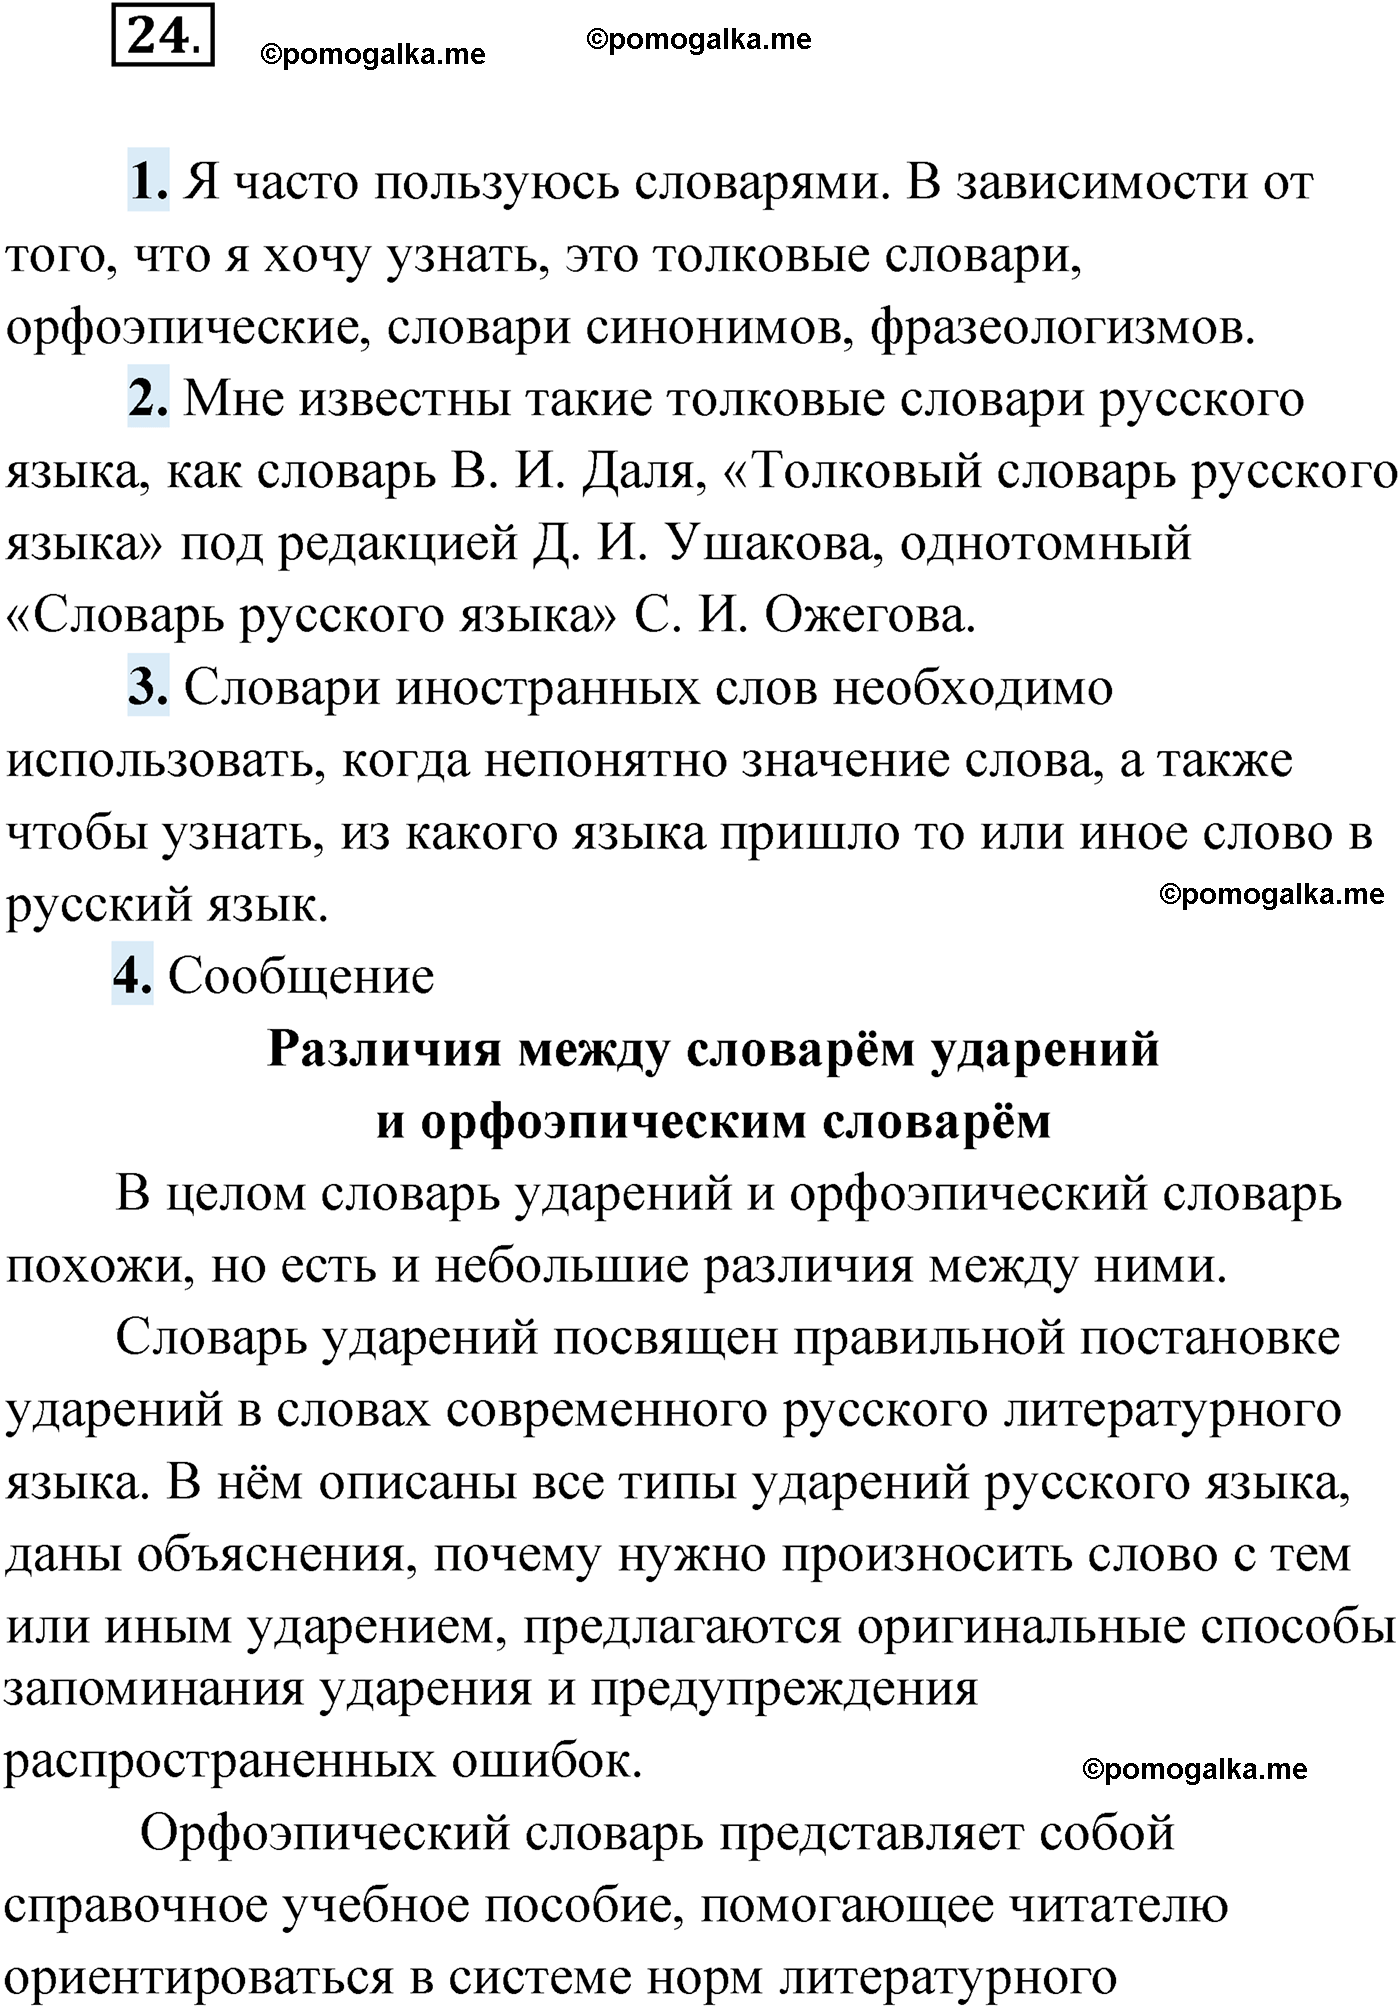 упражнение №24 русский язык 9 класс Мурина 2019 год